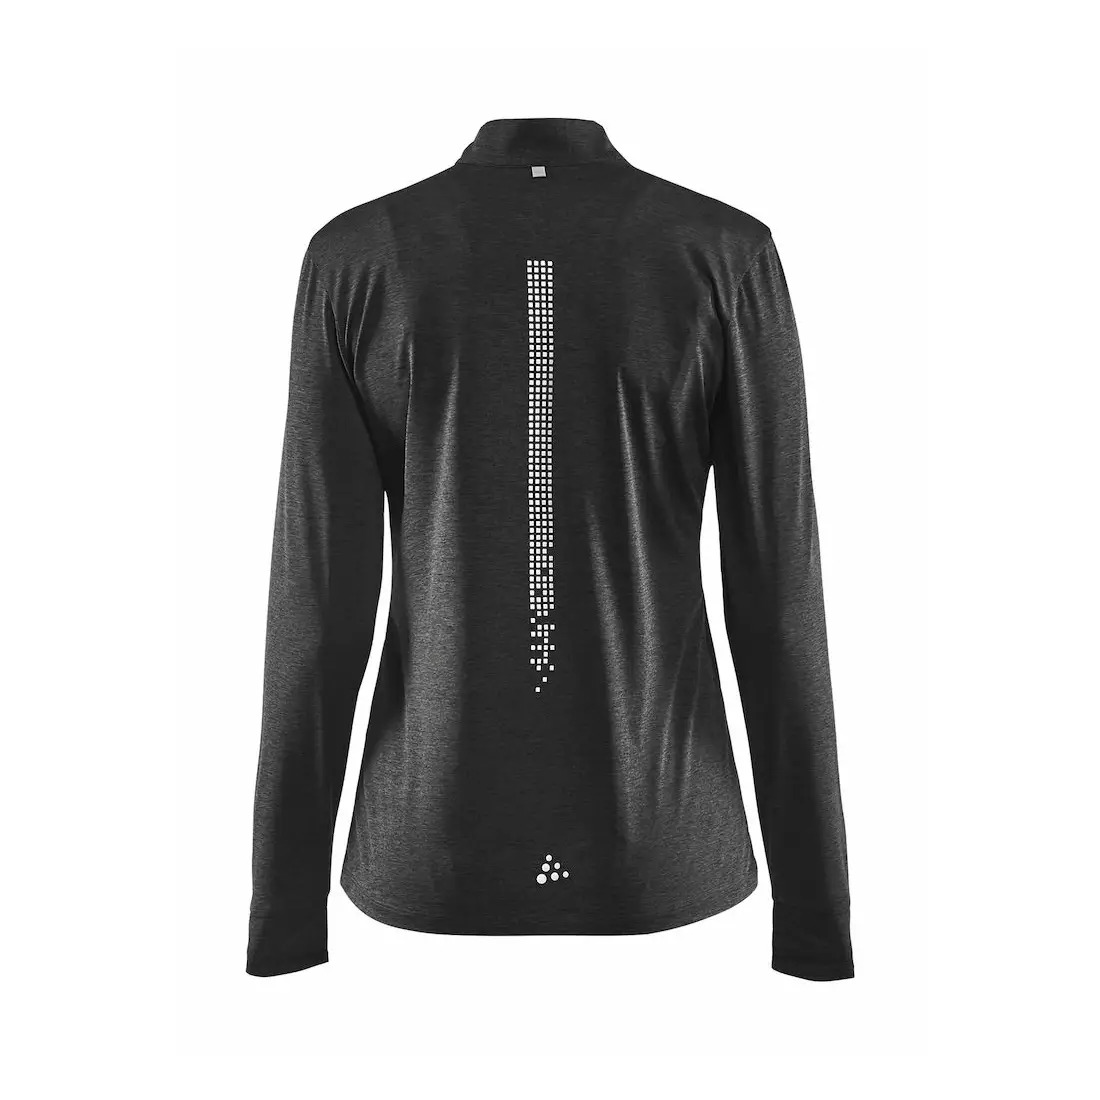 CRAFT REFLECTIVE ZIP 1905499-998000 women's long-sleeved running T-shirt black